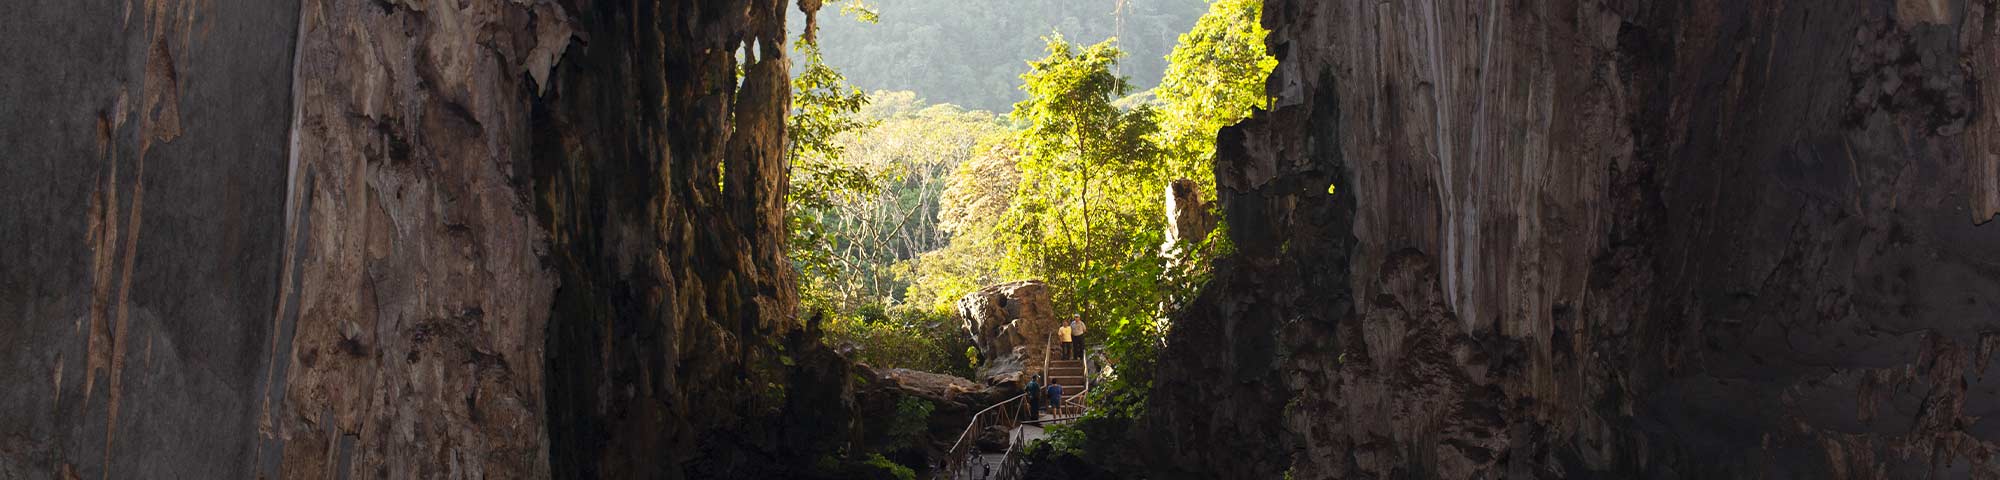  Parque Nacional Tingo María es reconocido entre las historias de turismo sostenible en el mundo